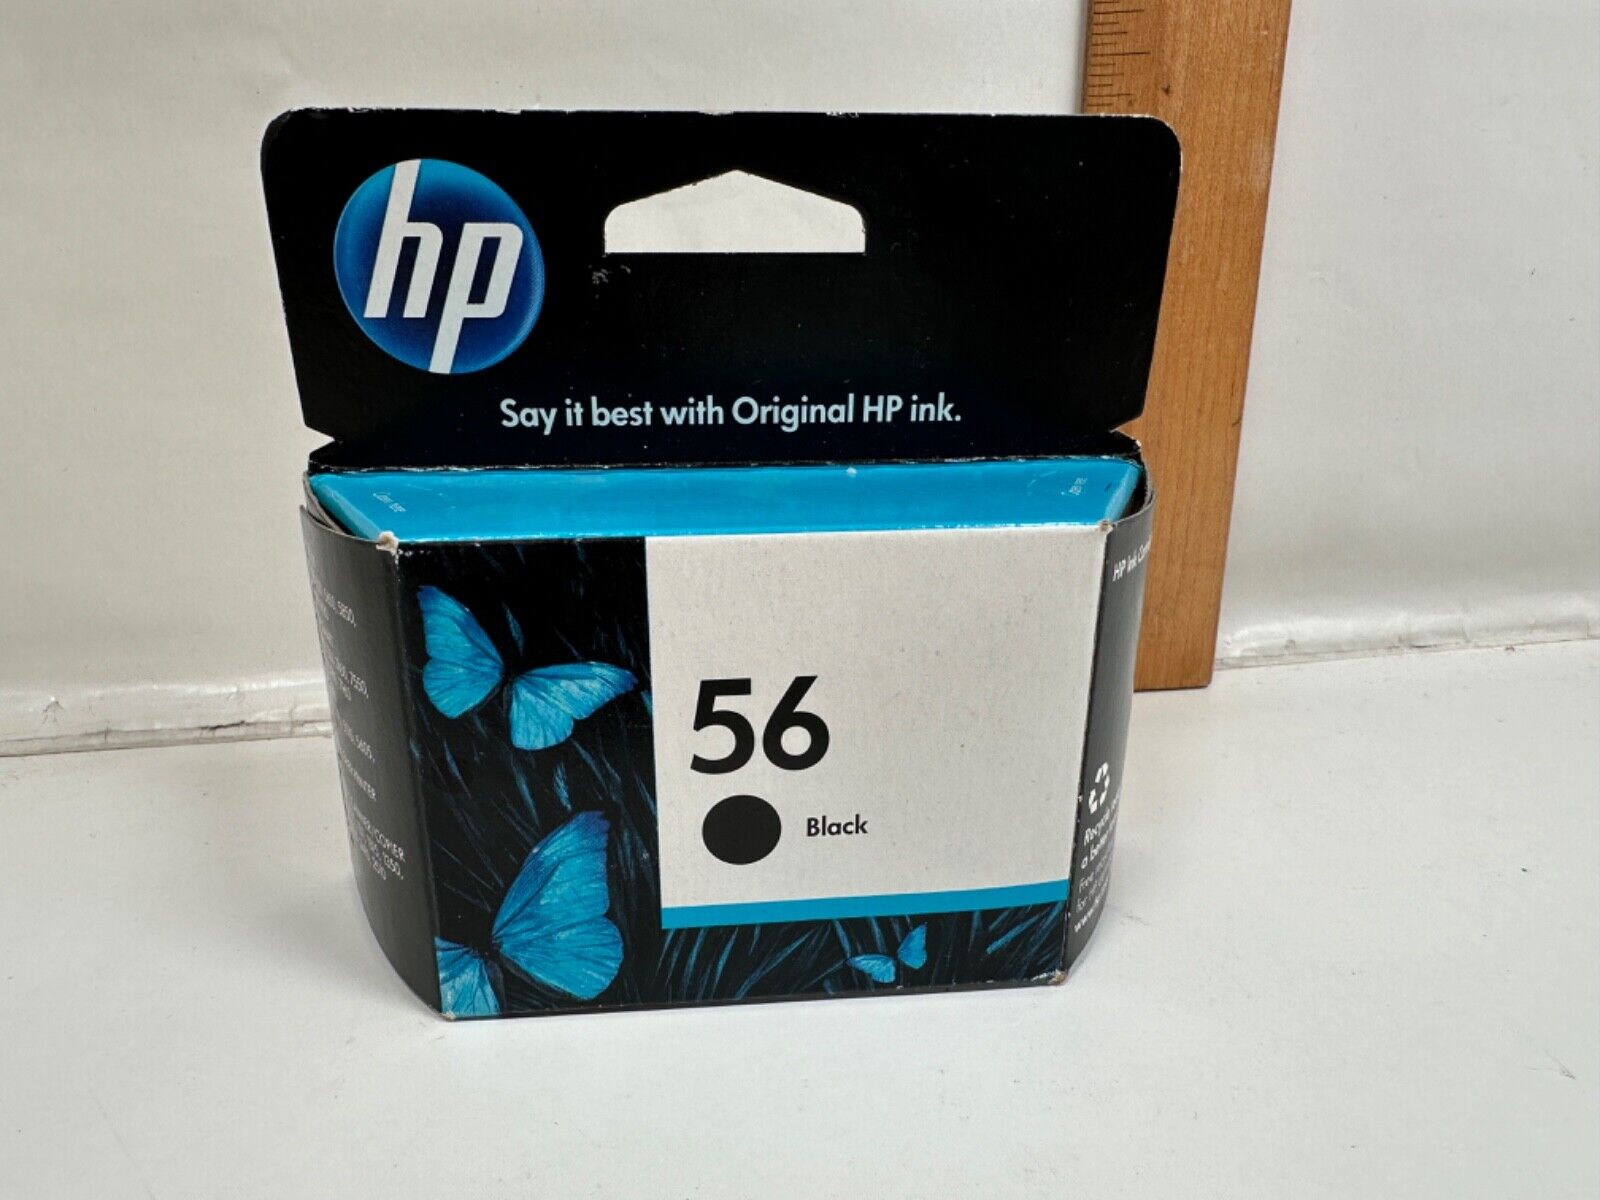 Genuine (OEM) HP 56 Black Ink Cartridge New Sealed Factory Box Exp. Dec 2012?